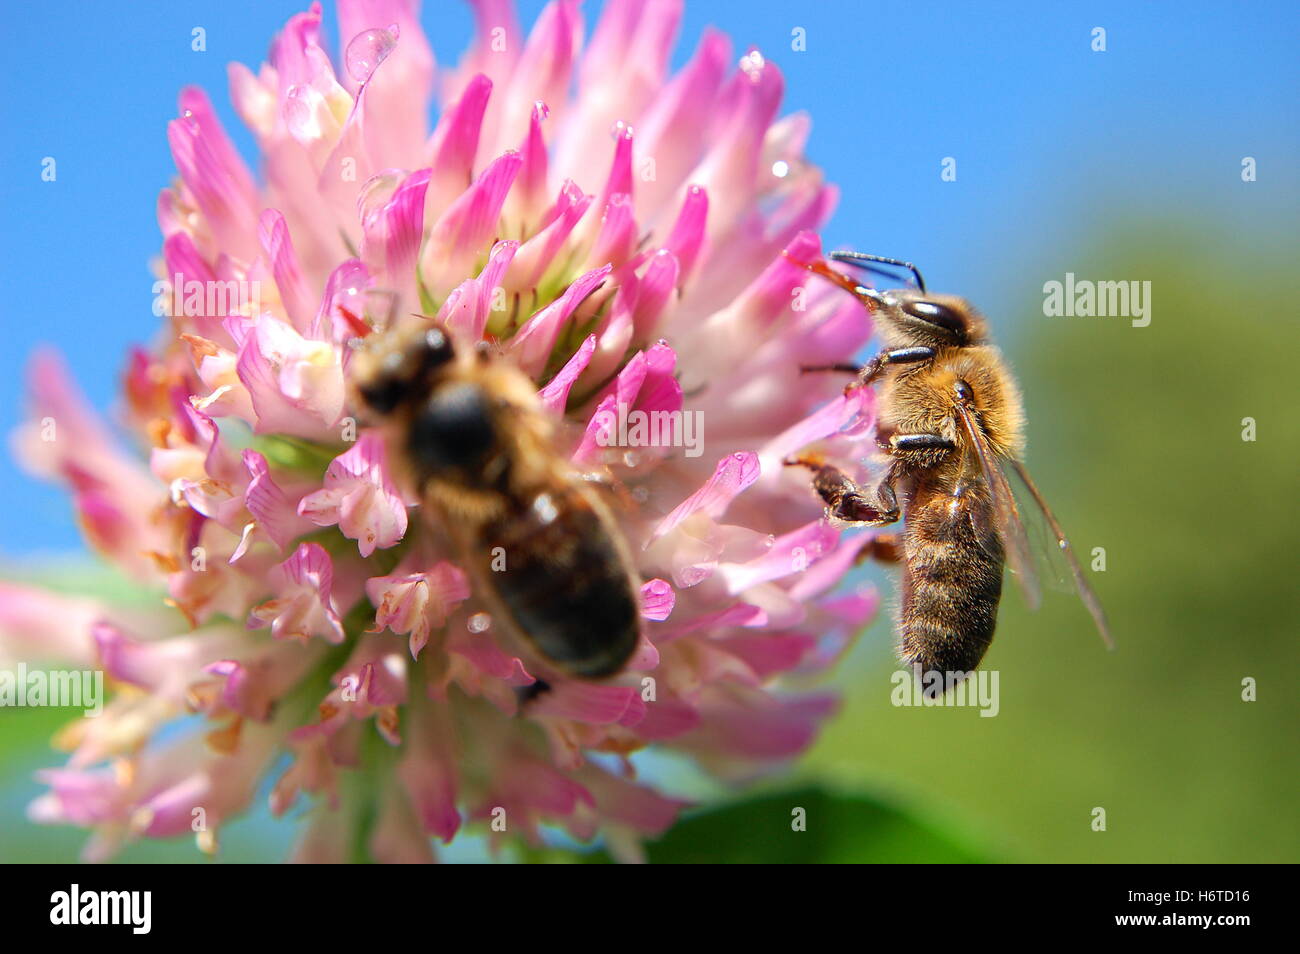 Insecto animal flor planta pradera trébol abejas trabajo hoja closeup jardín animal de vuelo del insecto agricultura agricultura plantas flor Foto de stock